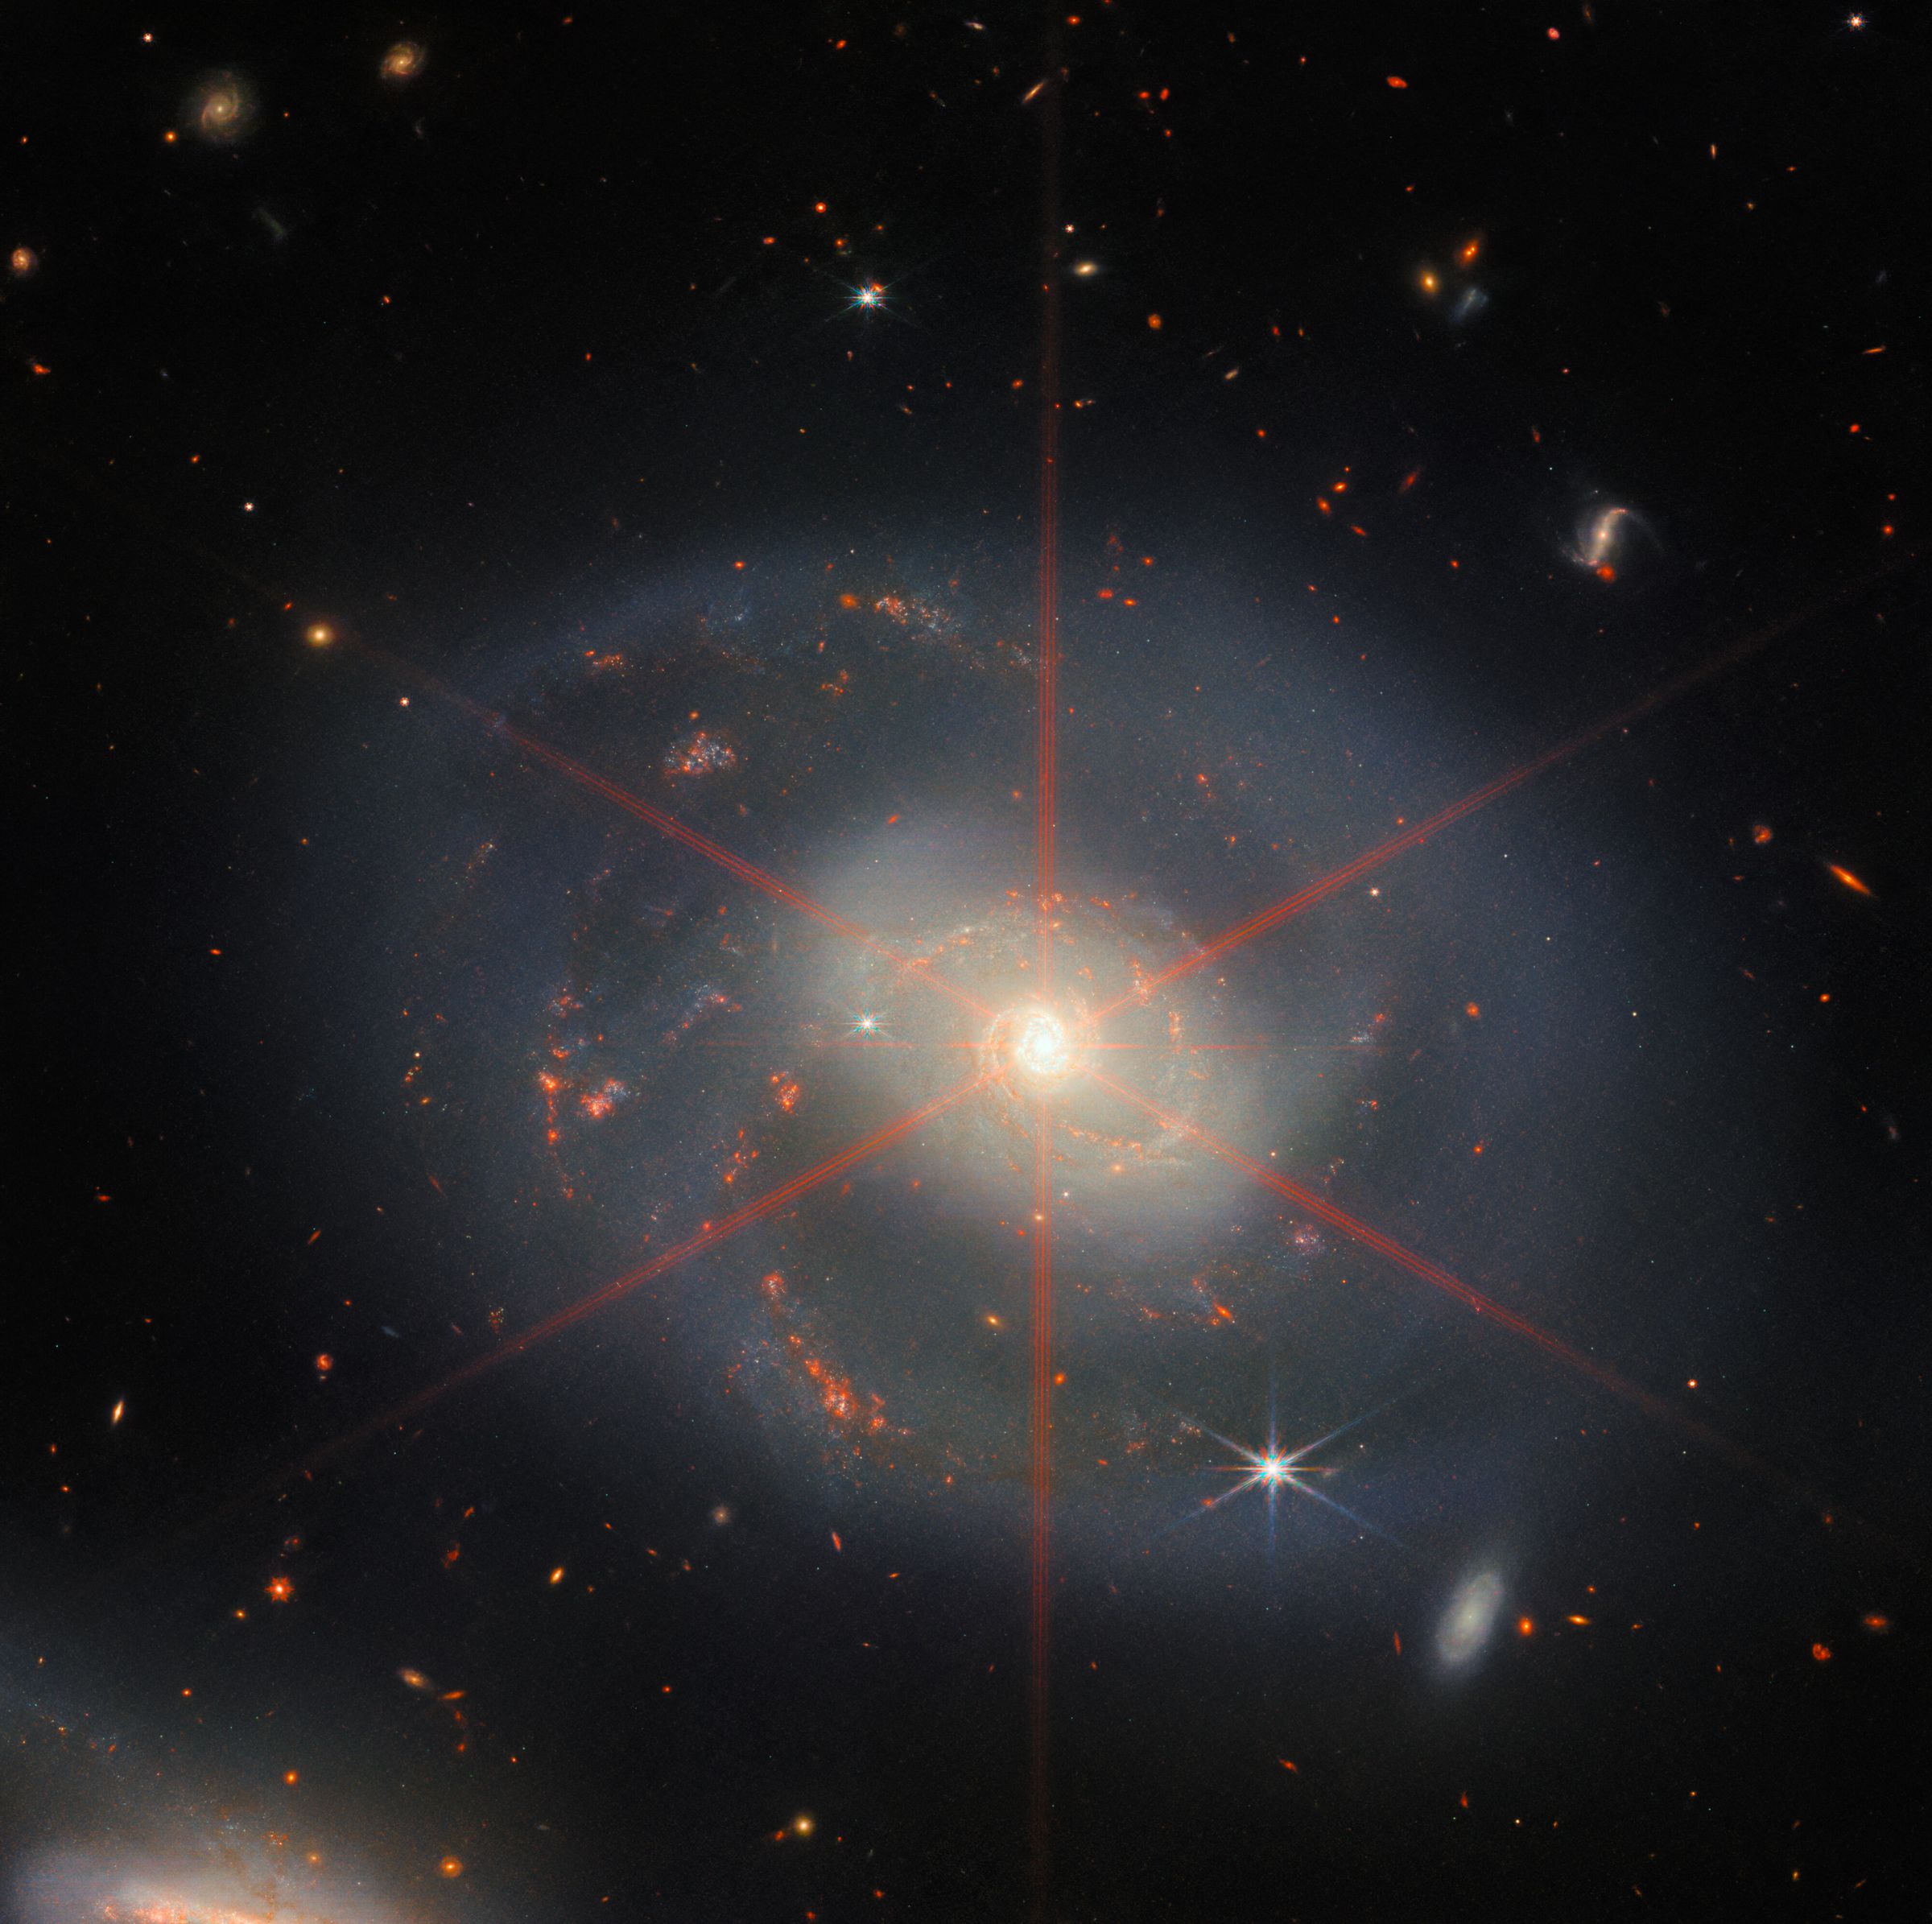 Šiame paveikslėlyje parodyta spiralinė galaktika, kurioje dominuoja šviesus centrinis regionas.  Galaktika turi mėlynai violetinius atspalvius, o oranžinės-raudonos sritys užpildytos žvaigždėmis.  Taip pat galima pamatyti didelį difrakcijos smaigalį, kuris atrodo kaip žvaigždžių modelis virš galaktikos centrinės srities.  Daugybė žvaigždžių ir galaktikų užpildo fono peizažą